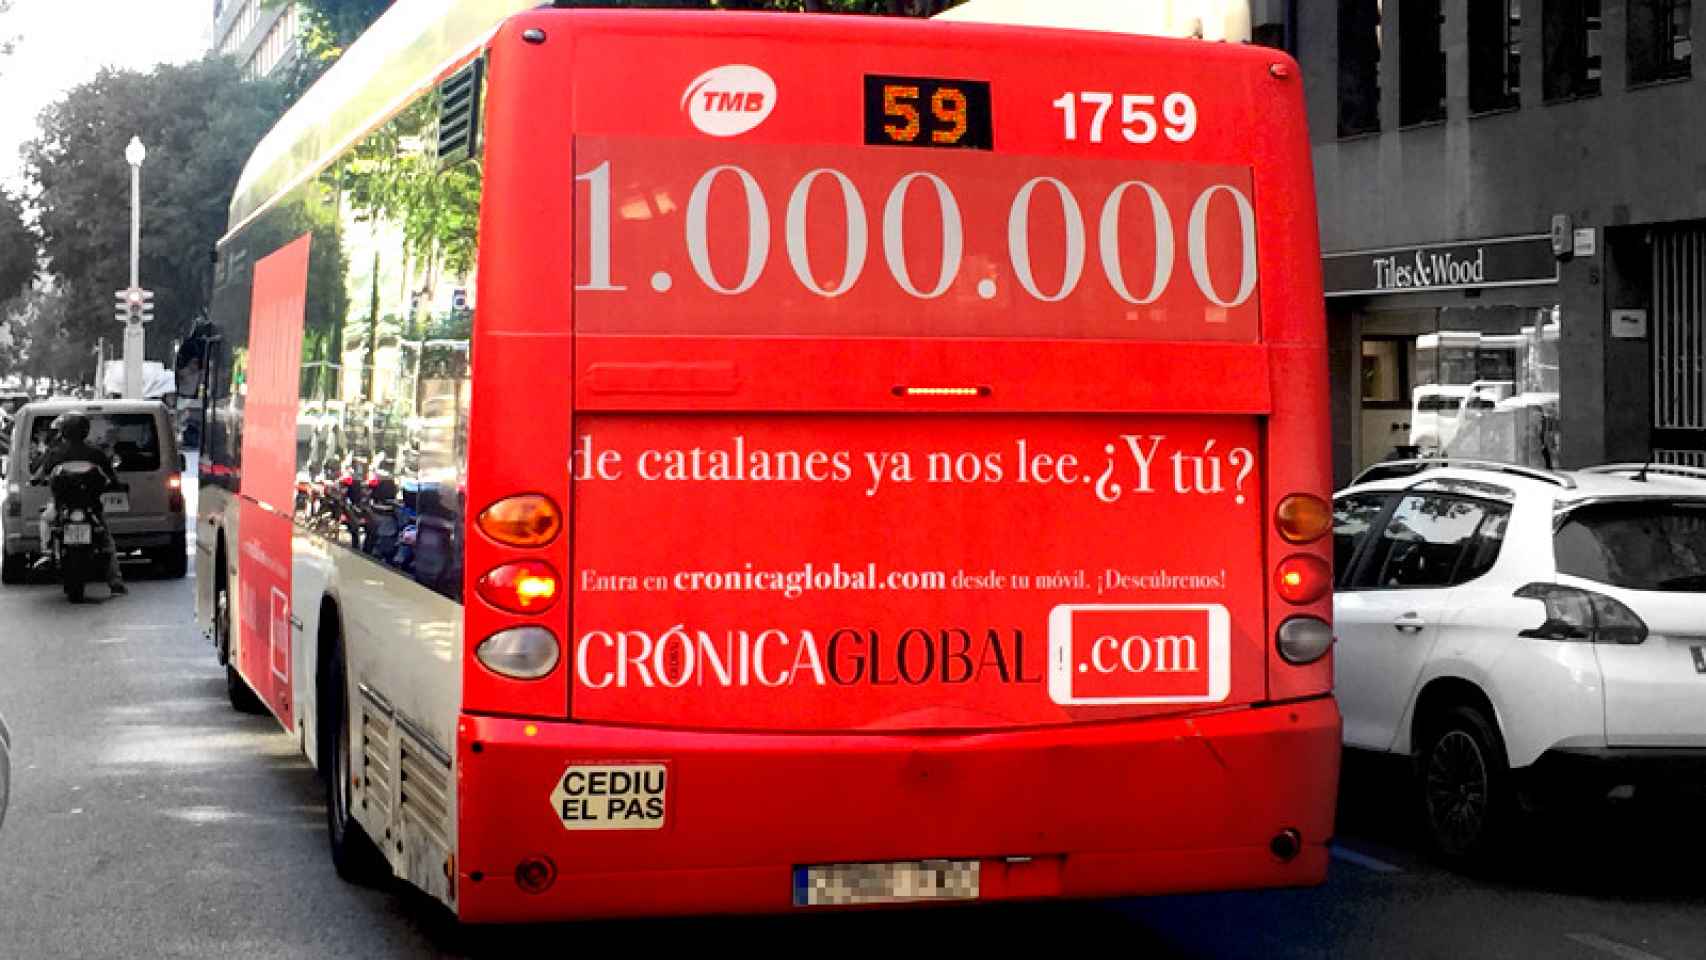 Un autobús de Barcelona exhibe una campaña de publicidad de 'Crónica Global'.